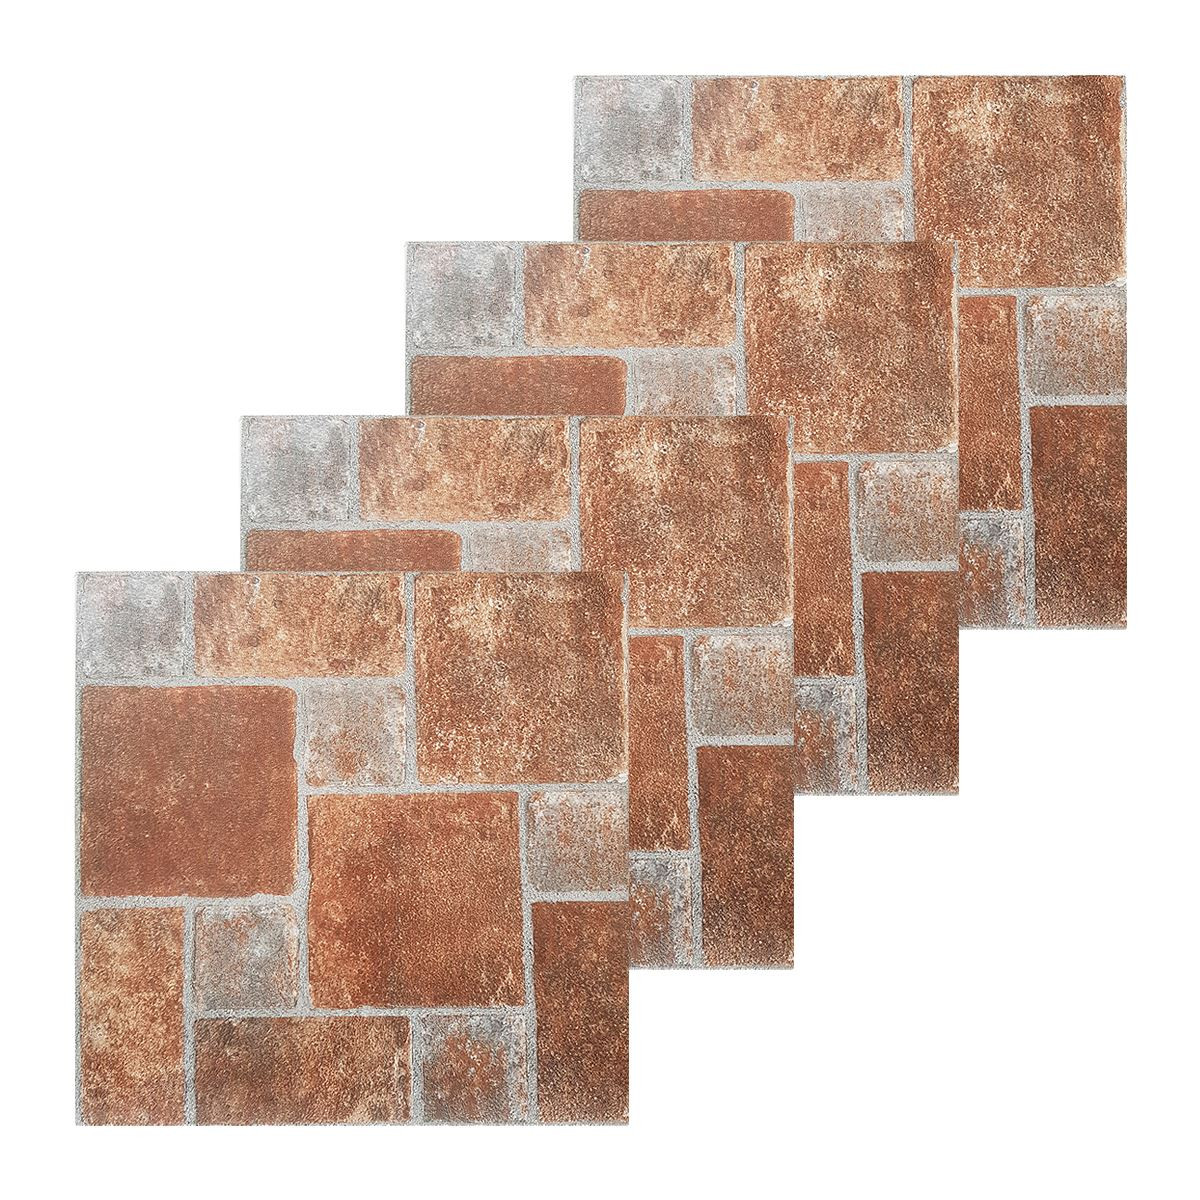 Self Adhesive Bathroom Floor Tiles
 Floor tiles self adhesive brick effect tile vinyl flooring